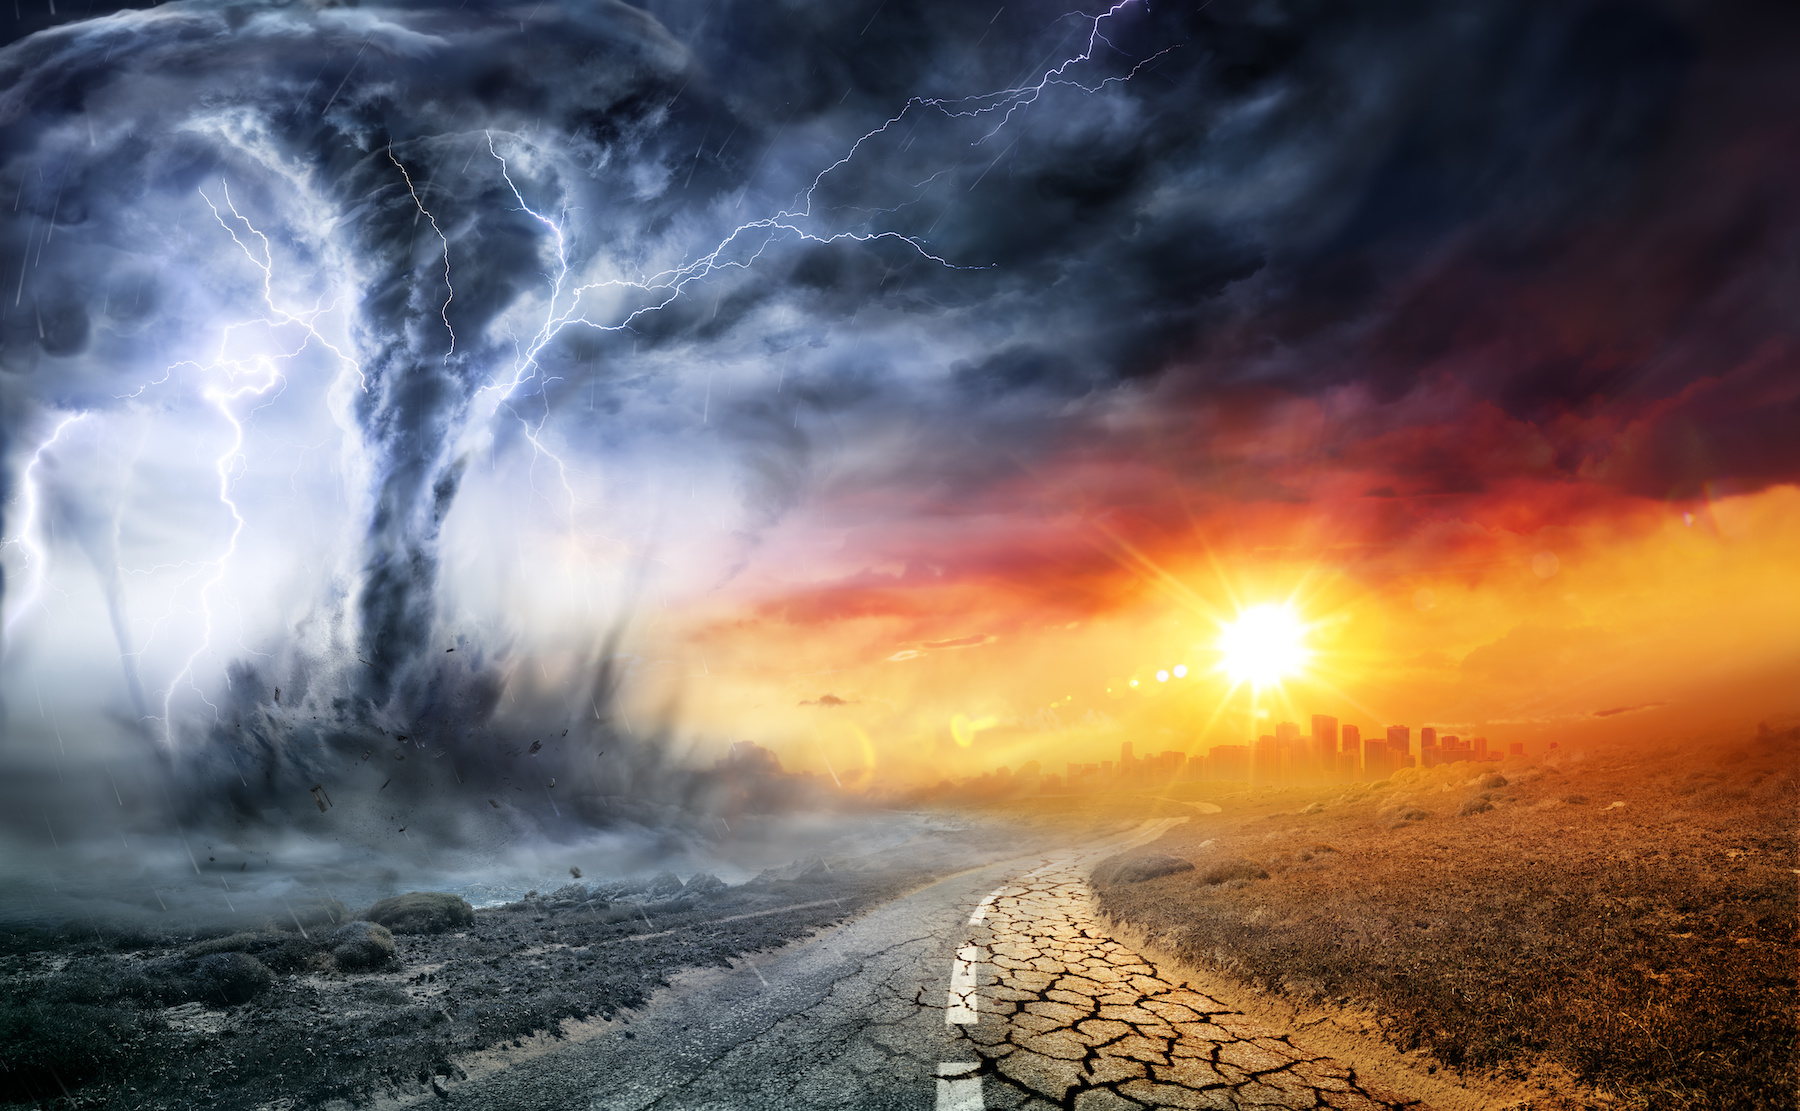 Le réchauffement climatique accroît les phénomènes météorologiques intenses. © Romolo Tavani, Adobe Stock